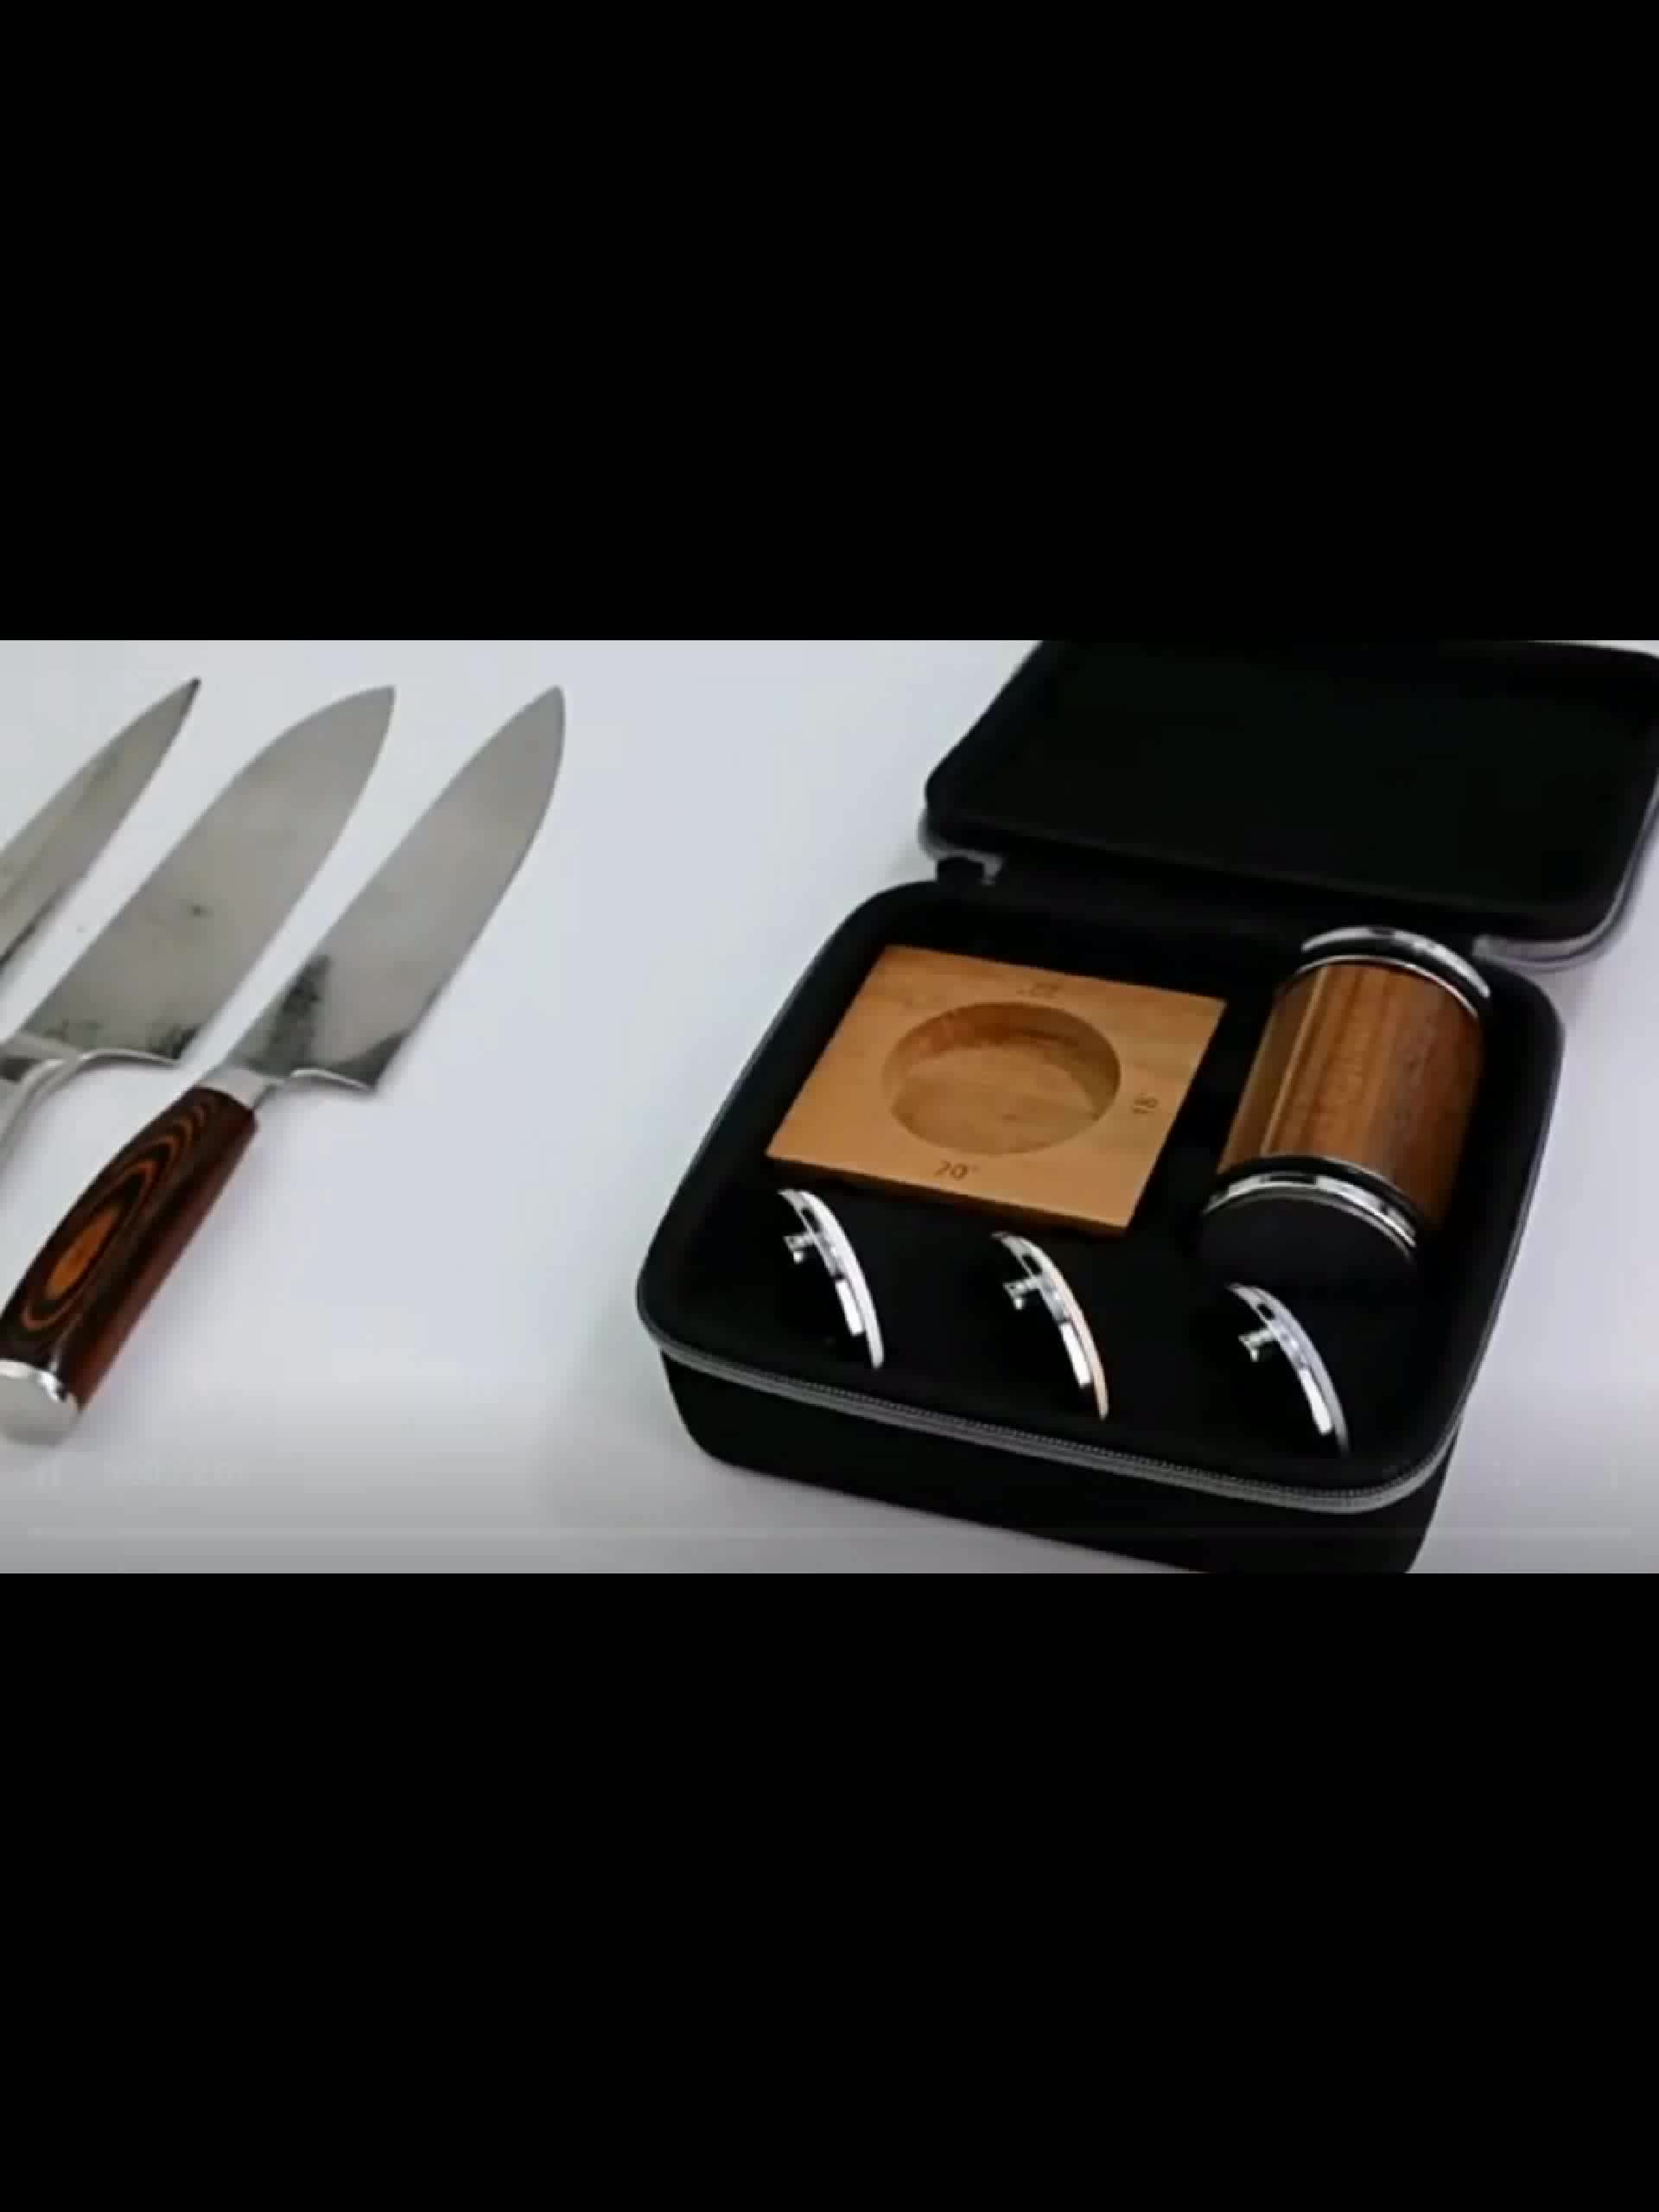 Tumbler Diamond Rolling Knife Sharpener Set